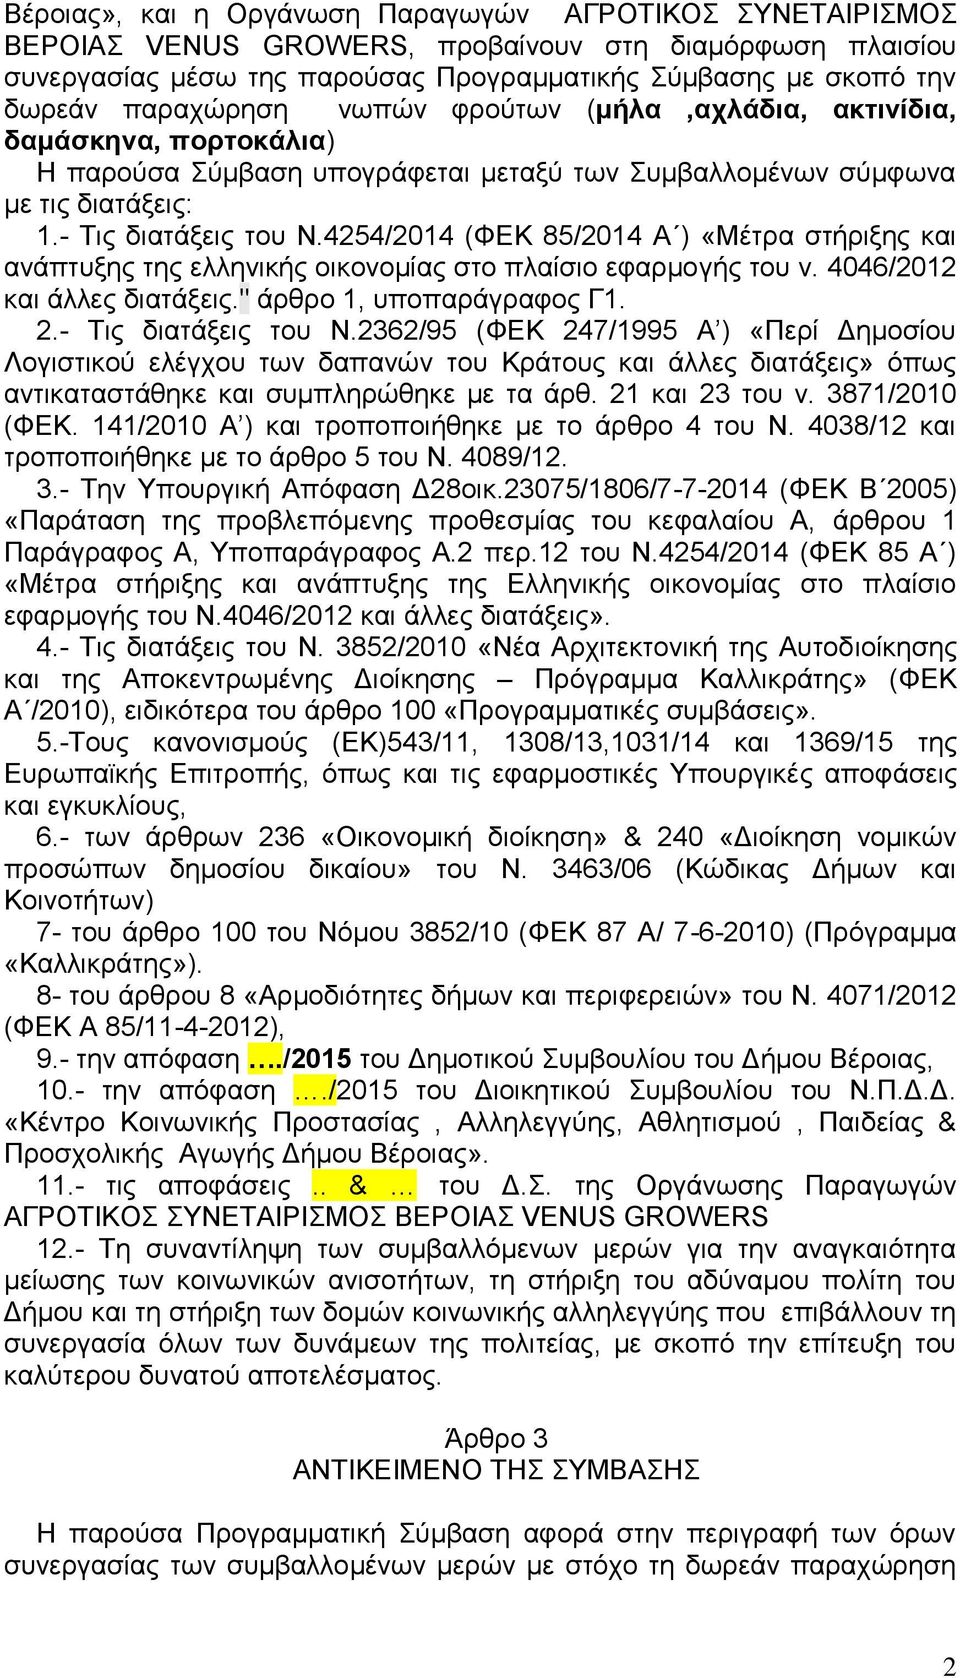 4254/2014 (ΦΕΚ 85/2014 Α ) «Μέτρα στήριξης και ανάπτυξης της ελληνικής οικονομίας στο πλαίσιο εφαρμογής του ν. 4046/2012 και άλλες διατάξεις." άρθρο 1, υποπαράγραφος Γ1. 2.- Τις διατάξεις του Ν.